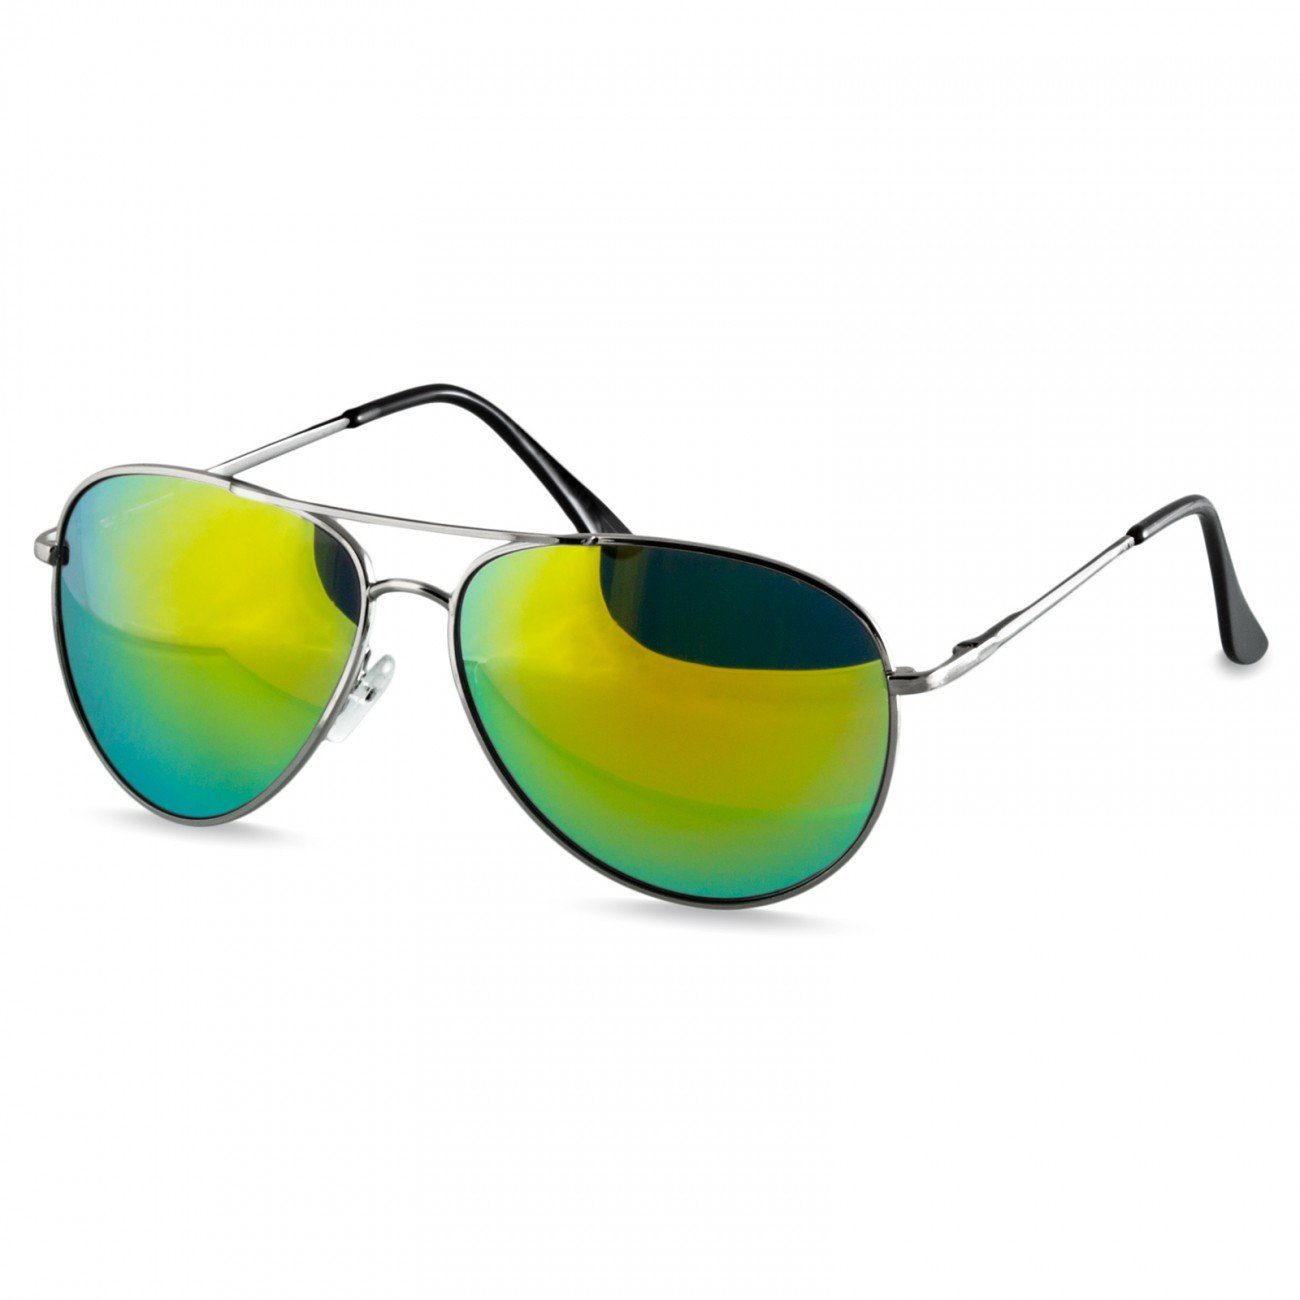 Grüne Sonnenbrillen online kaufen | OTTO